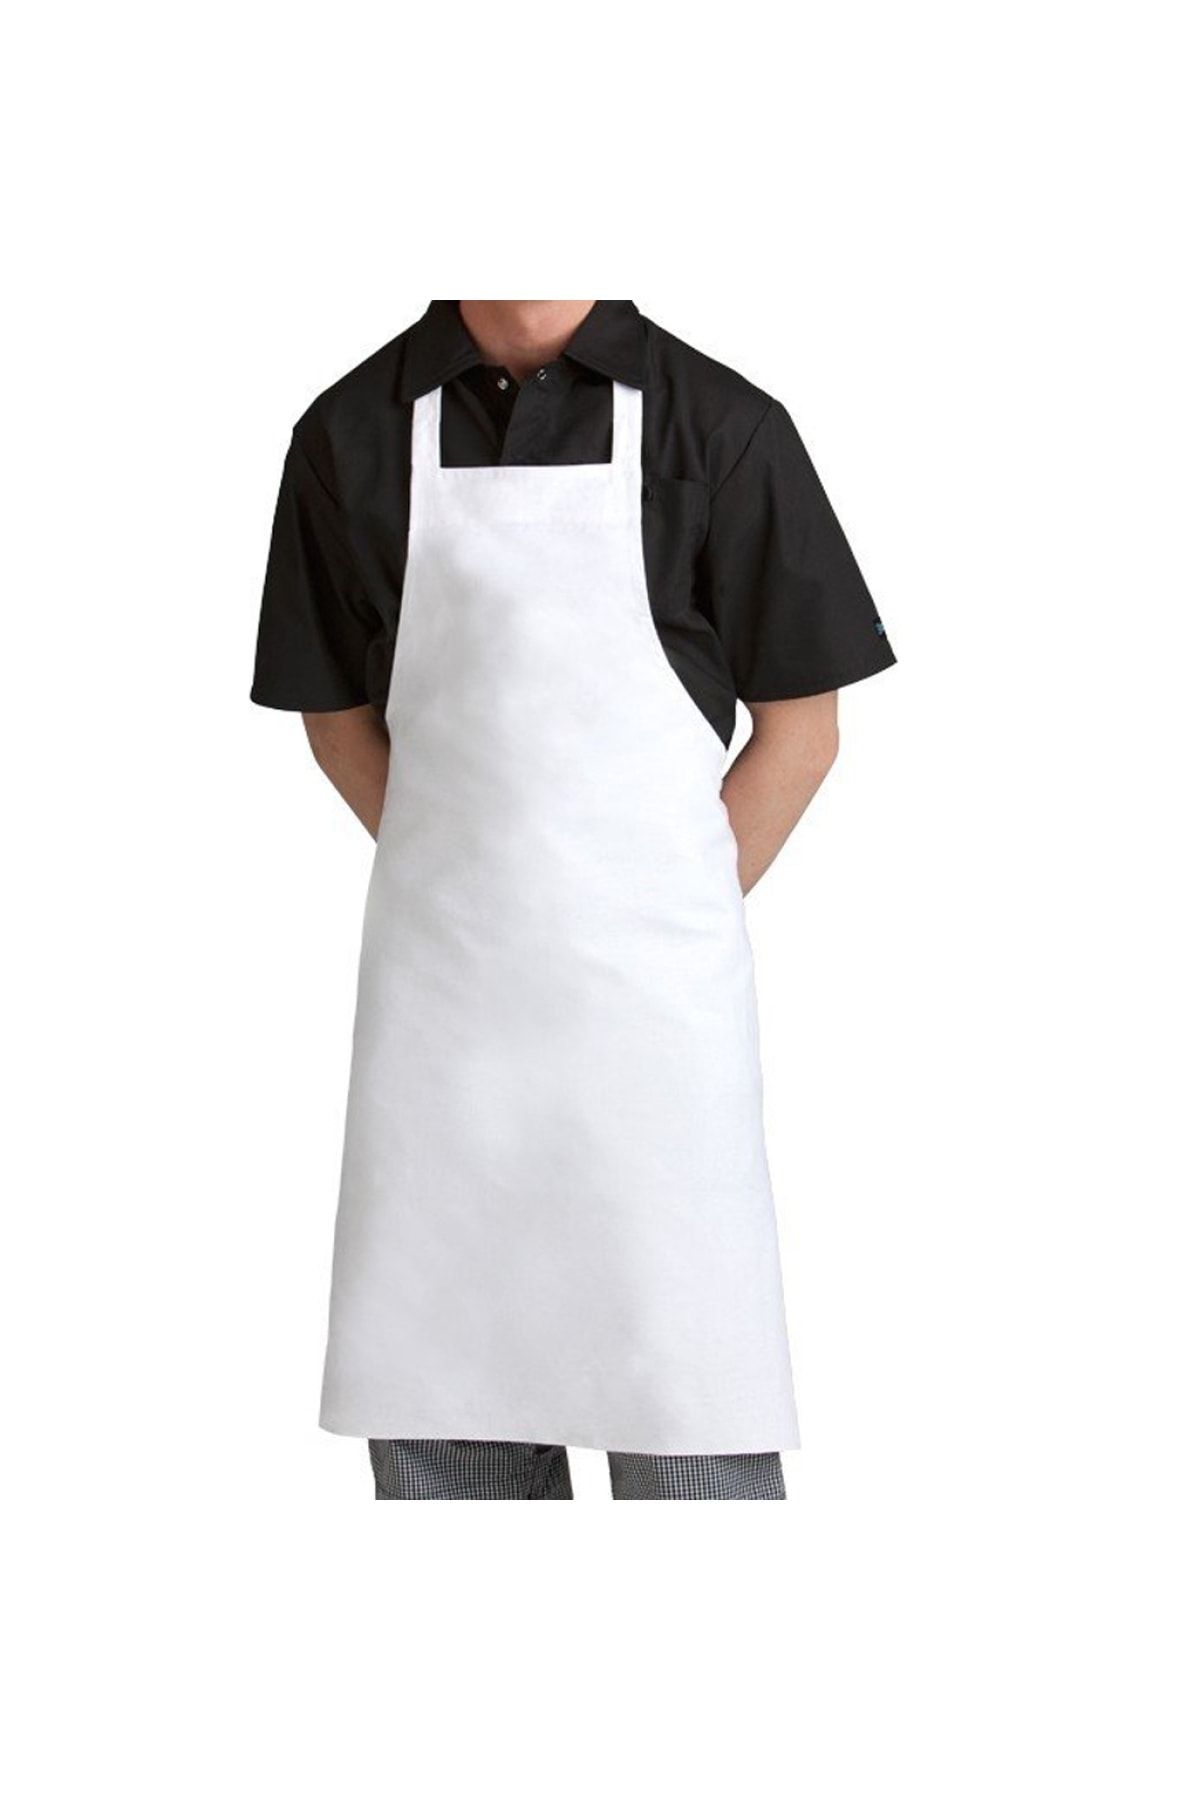 efetex Mutfak Aşçı Bulaşıkçı Temizlikçi Garson Şef Komi Boyundan Askılı Iş Önlük